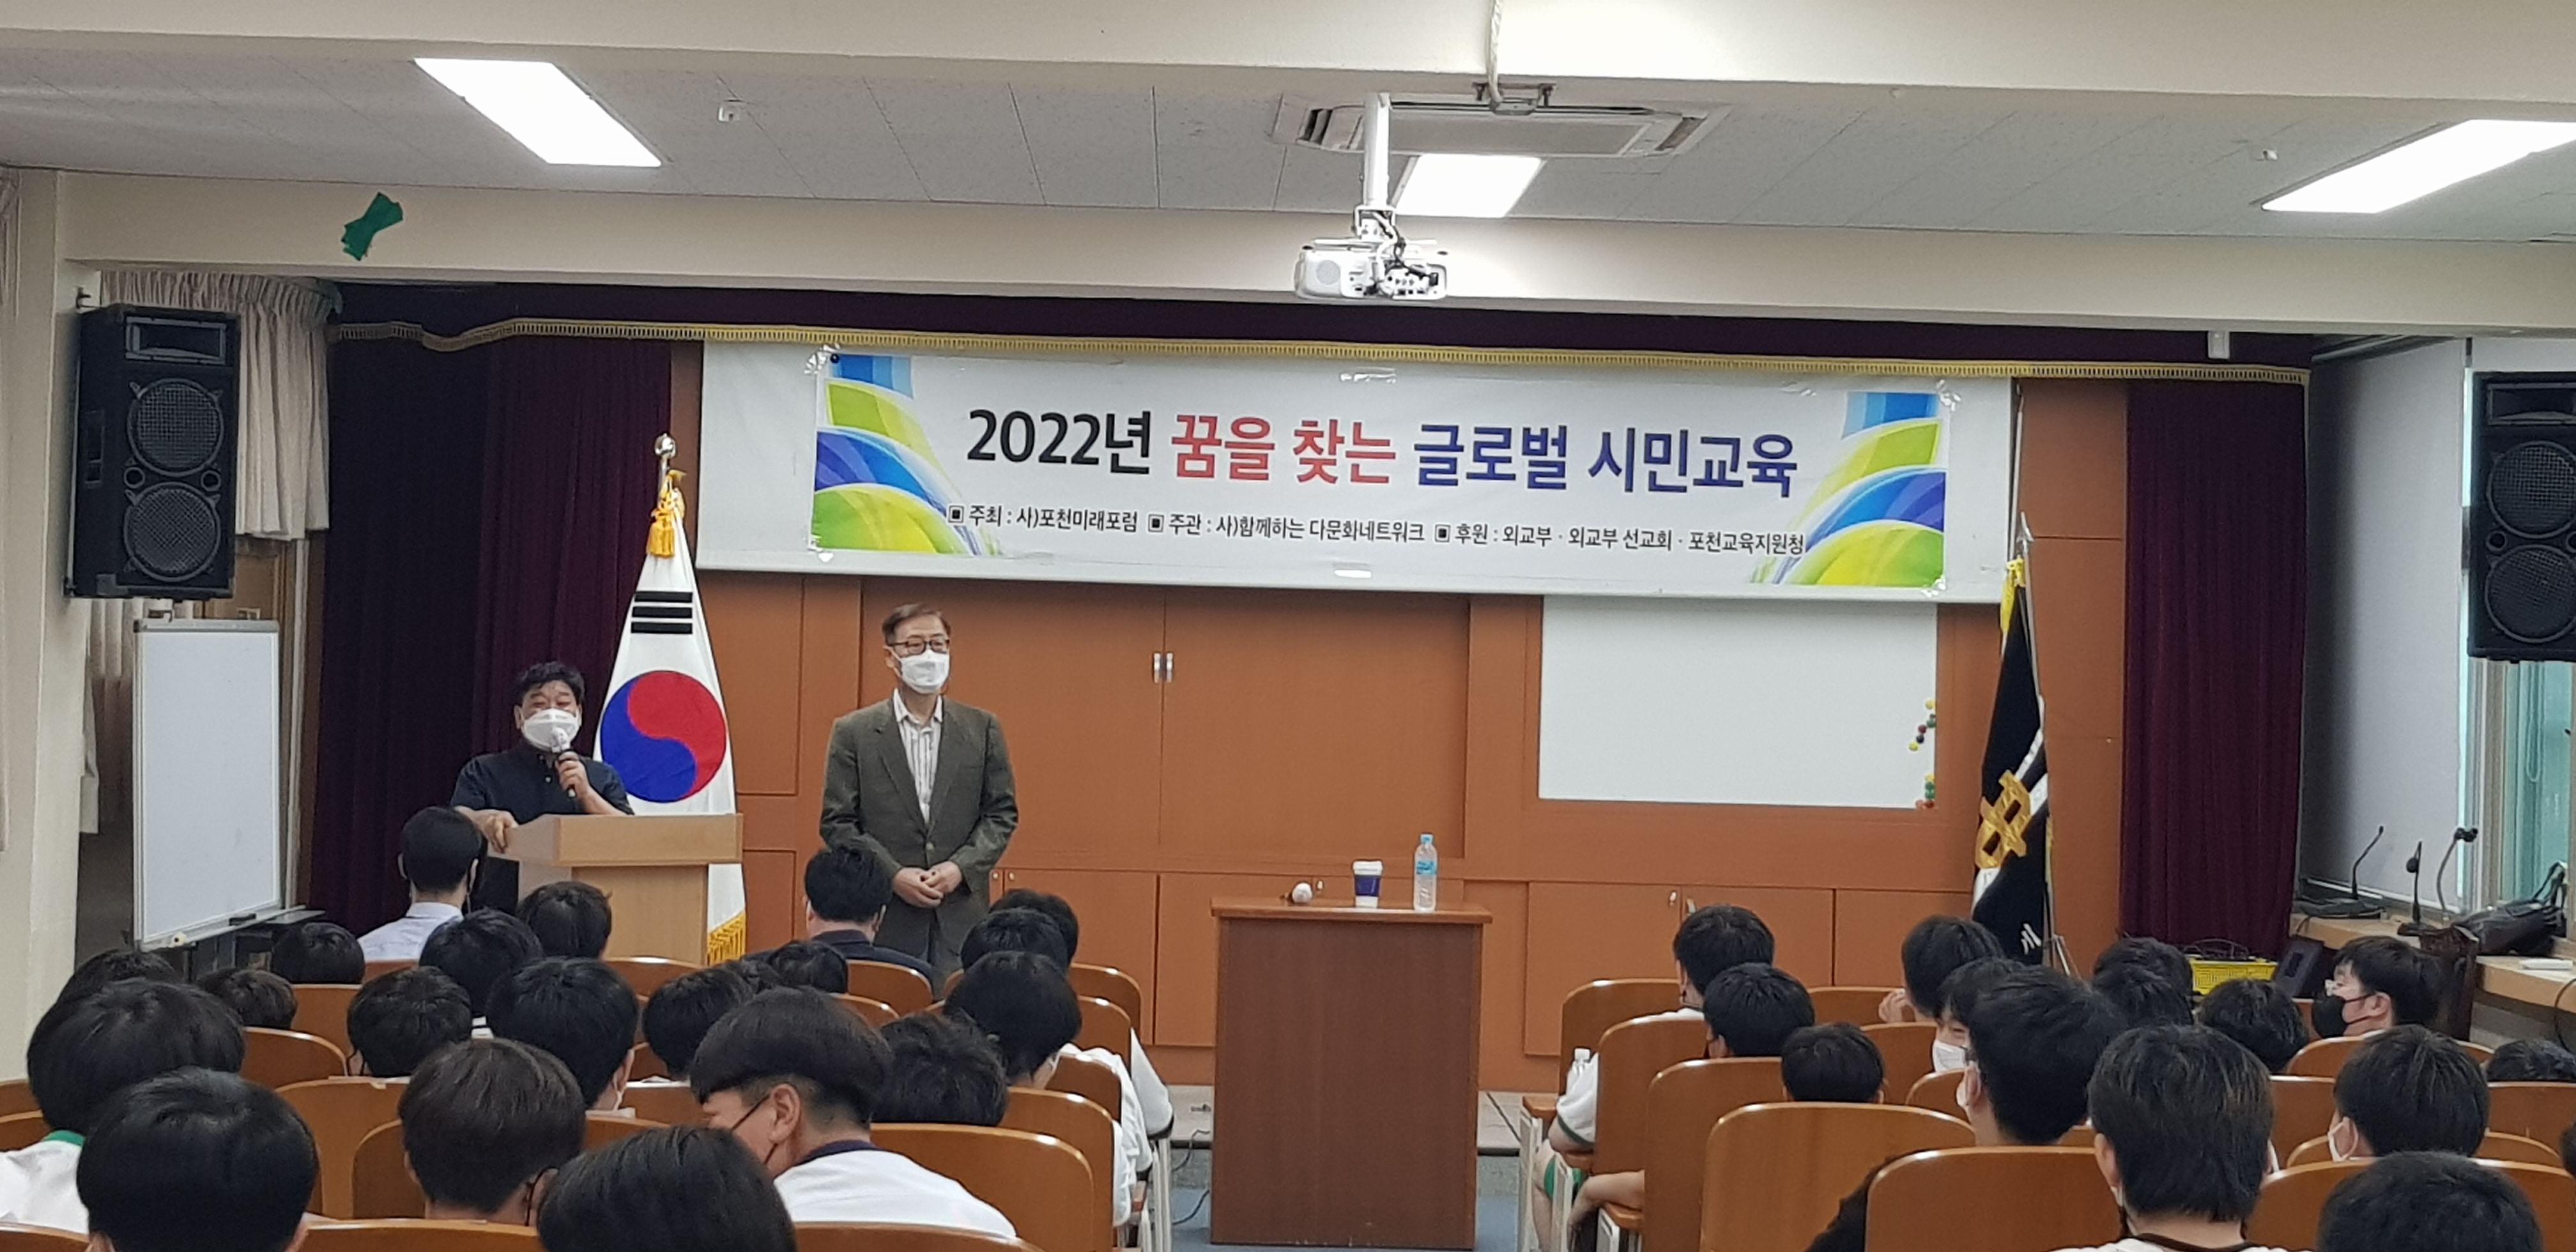 [일반] 2022년 꿈을 찾는 글러벌 시민교육의 첨부이미지 1